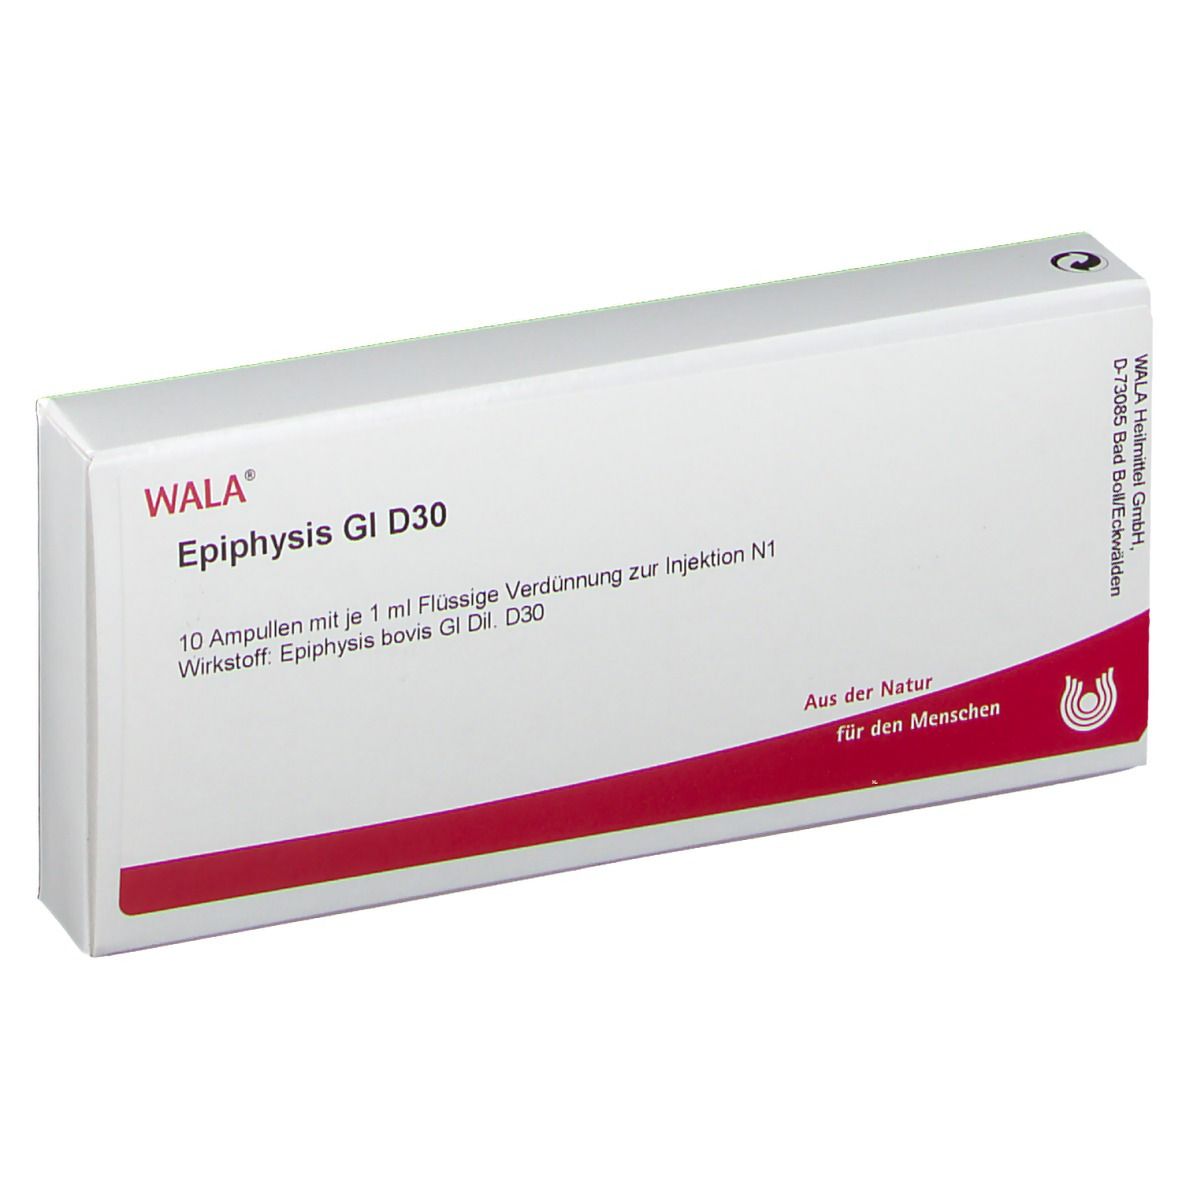 WALA® Epiphysis Gl D 30 Ampullen